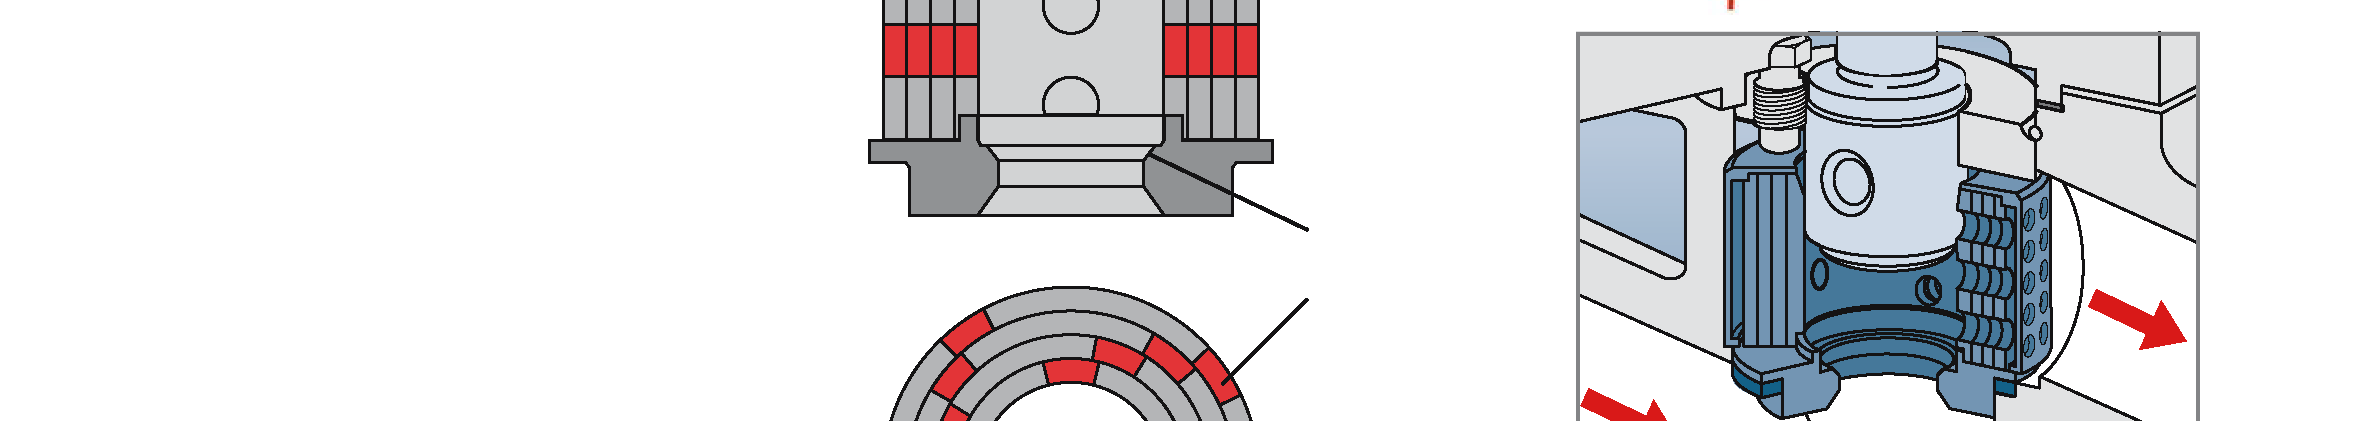 Otwory w każdej tulei wykonane są równolegle, ale na kolejnych tulejach otwory te są przesunięte taki sposób, aby tylko częściowo zachodziły na siebie, tworząc w ten sposób system szeregowych dysz z